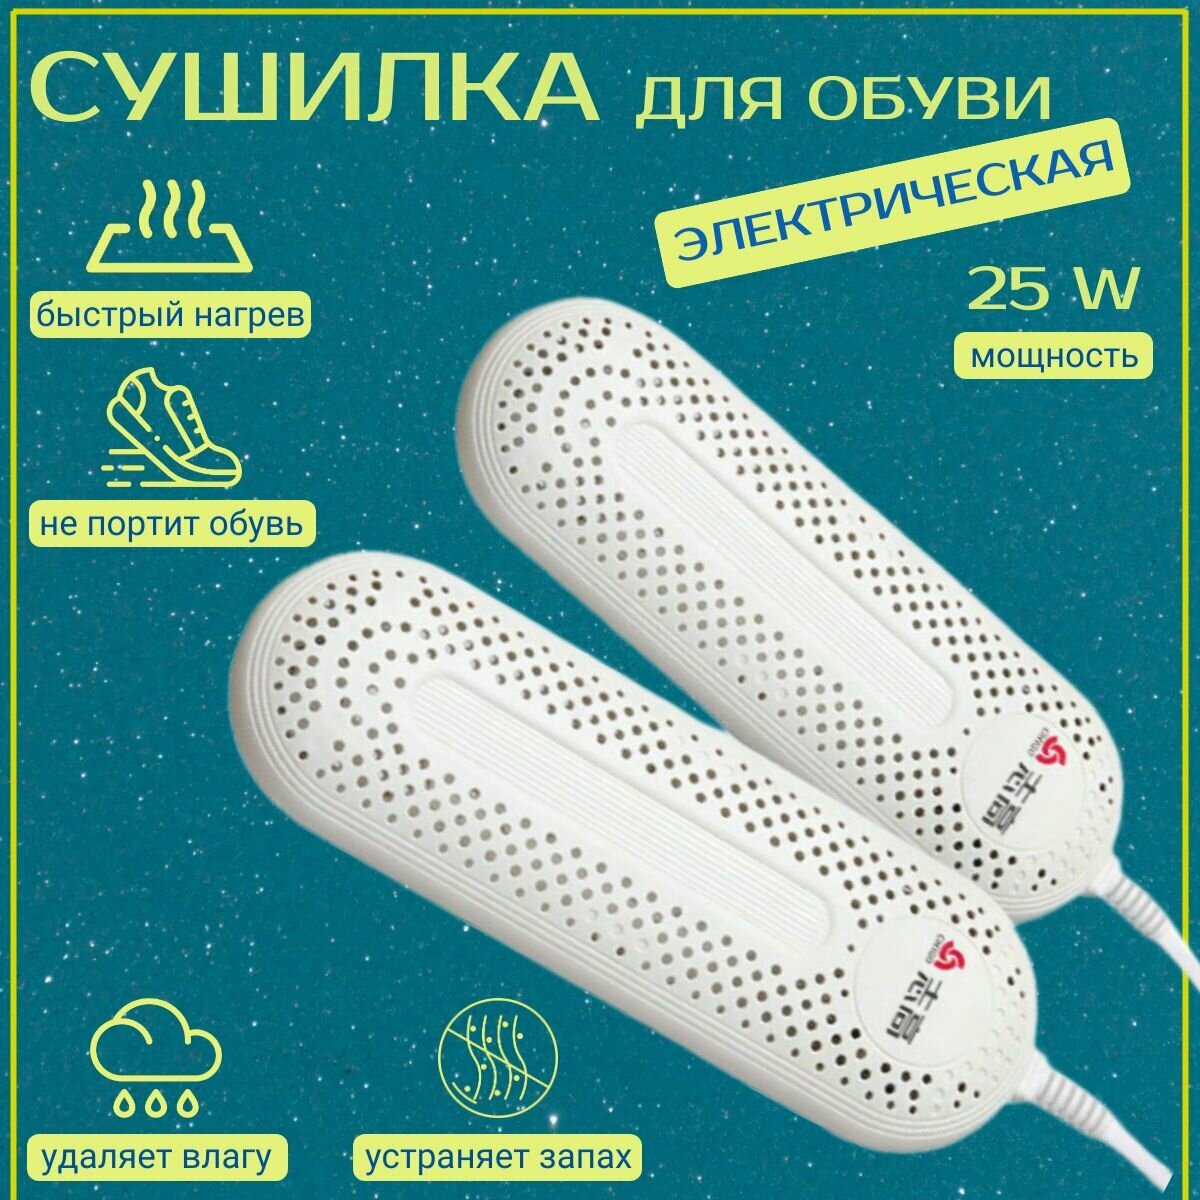 Сушилка для обуви электрическая / Домашняя сушка / антибактериальная обработка и устранение запаха.